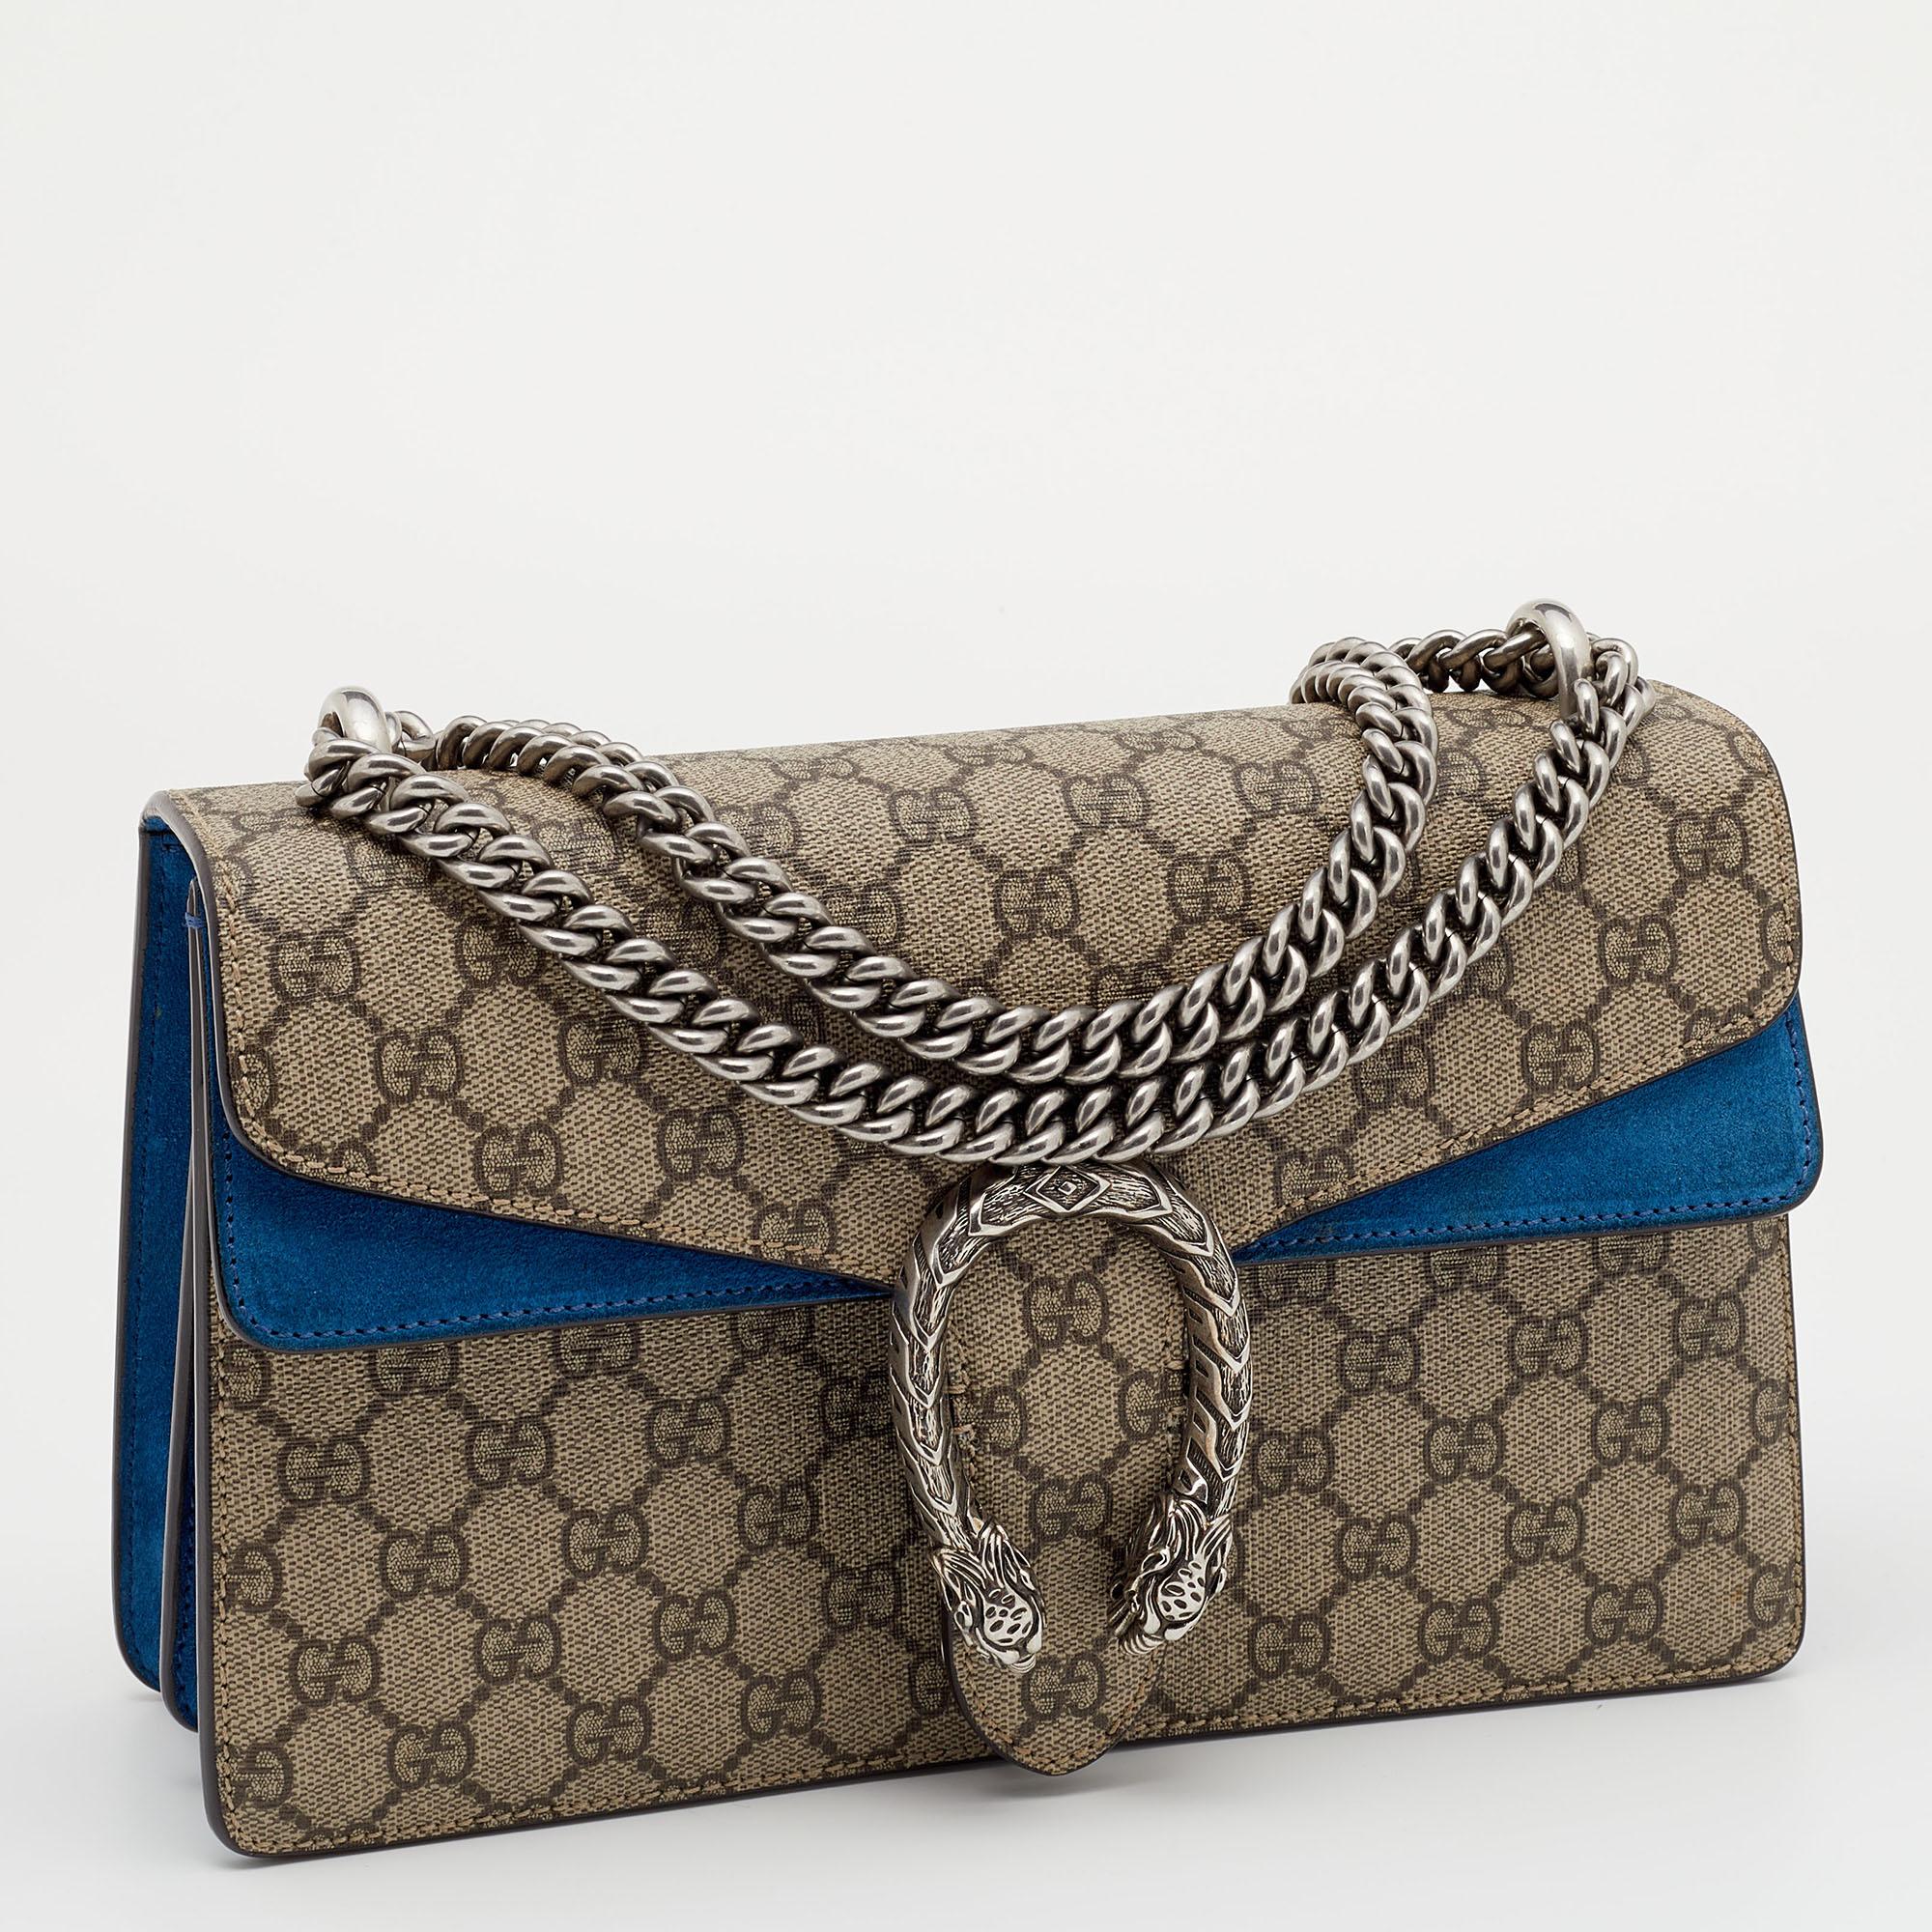 Black Gucci Beige/Blue GG Supreme Canvas And Suede Medium Dionysus Shoulder Bag